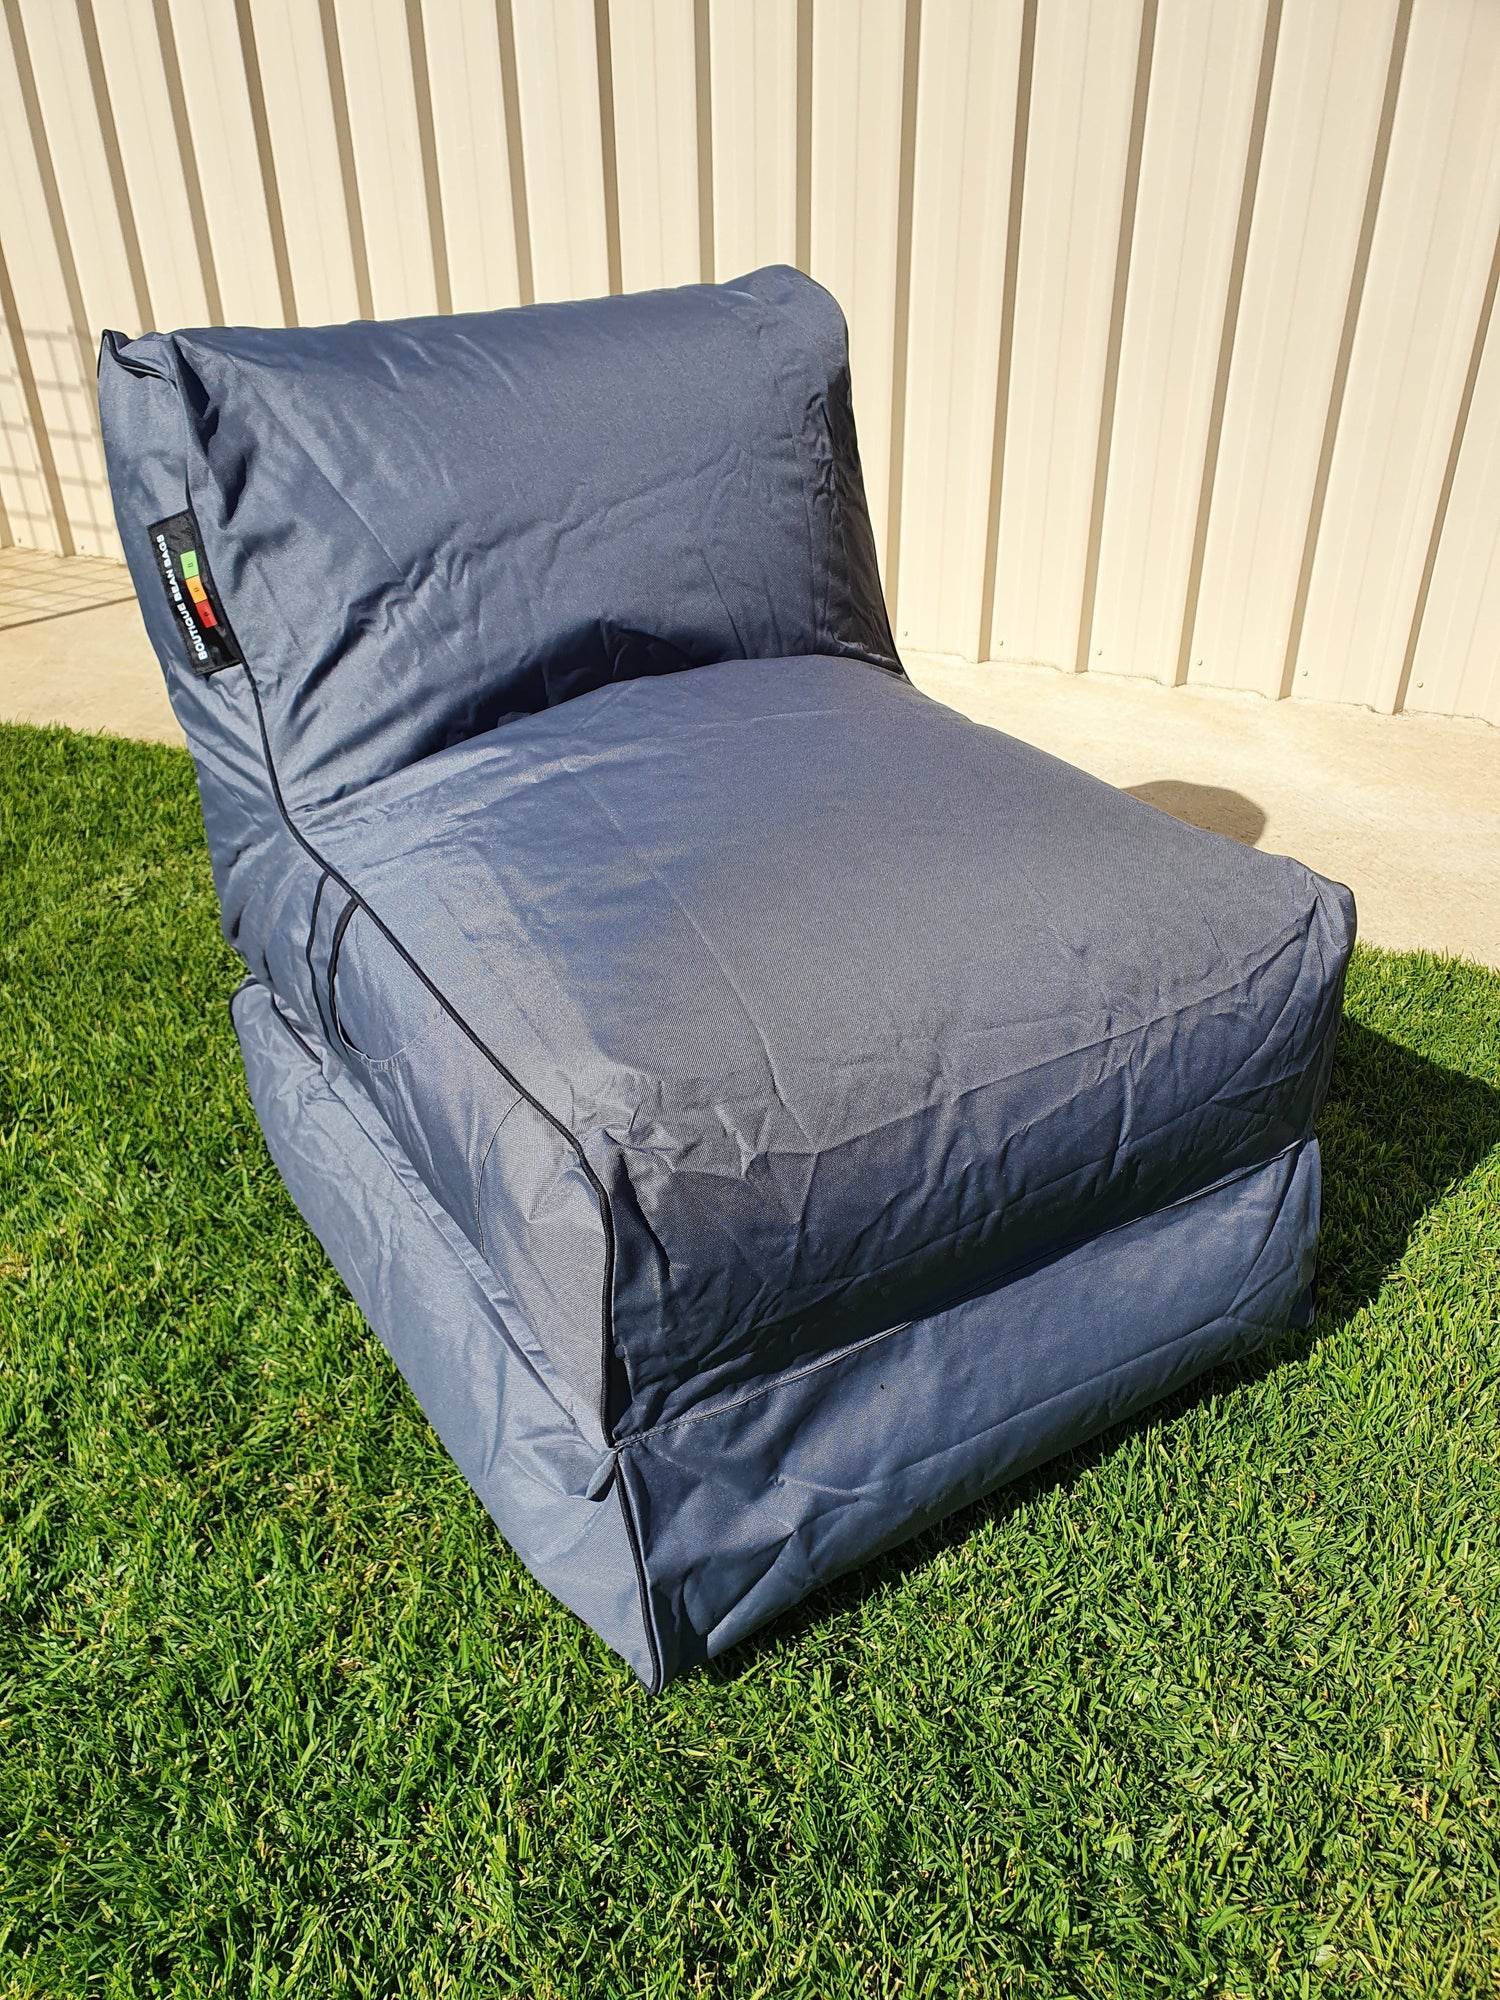 Outdoor Bean Bag Chair Foldout - Chaise